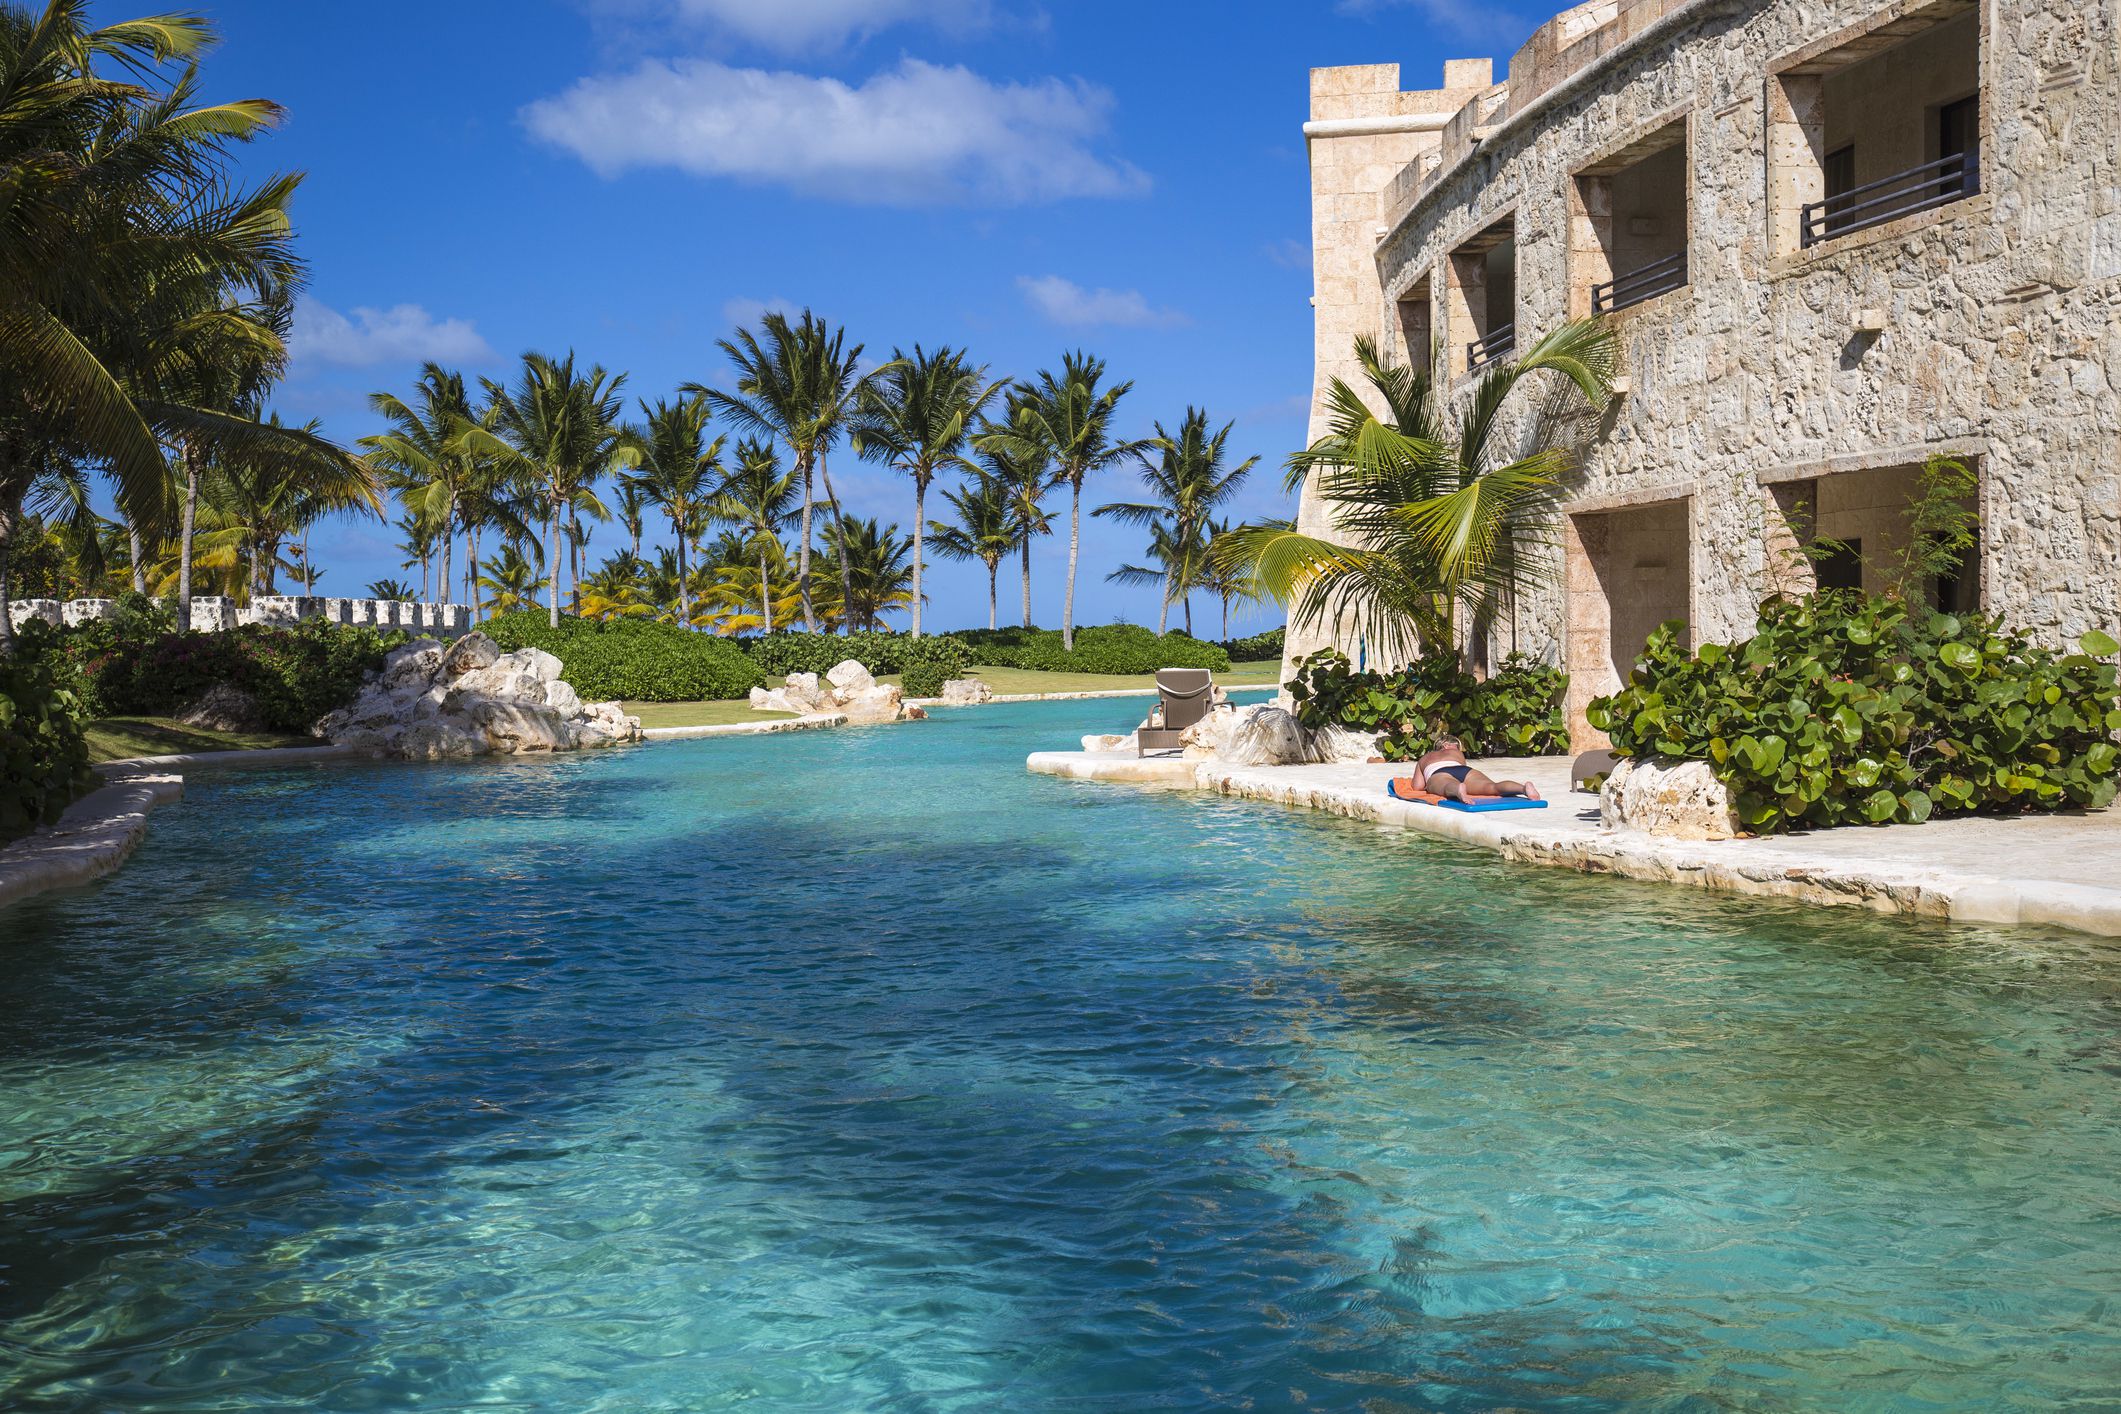 All-Inclusive Resorts in the Dominican Republic